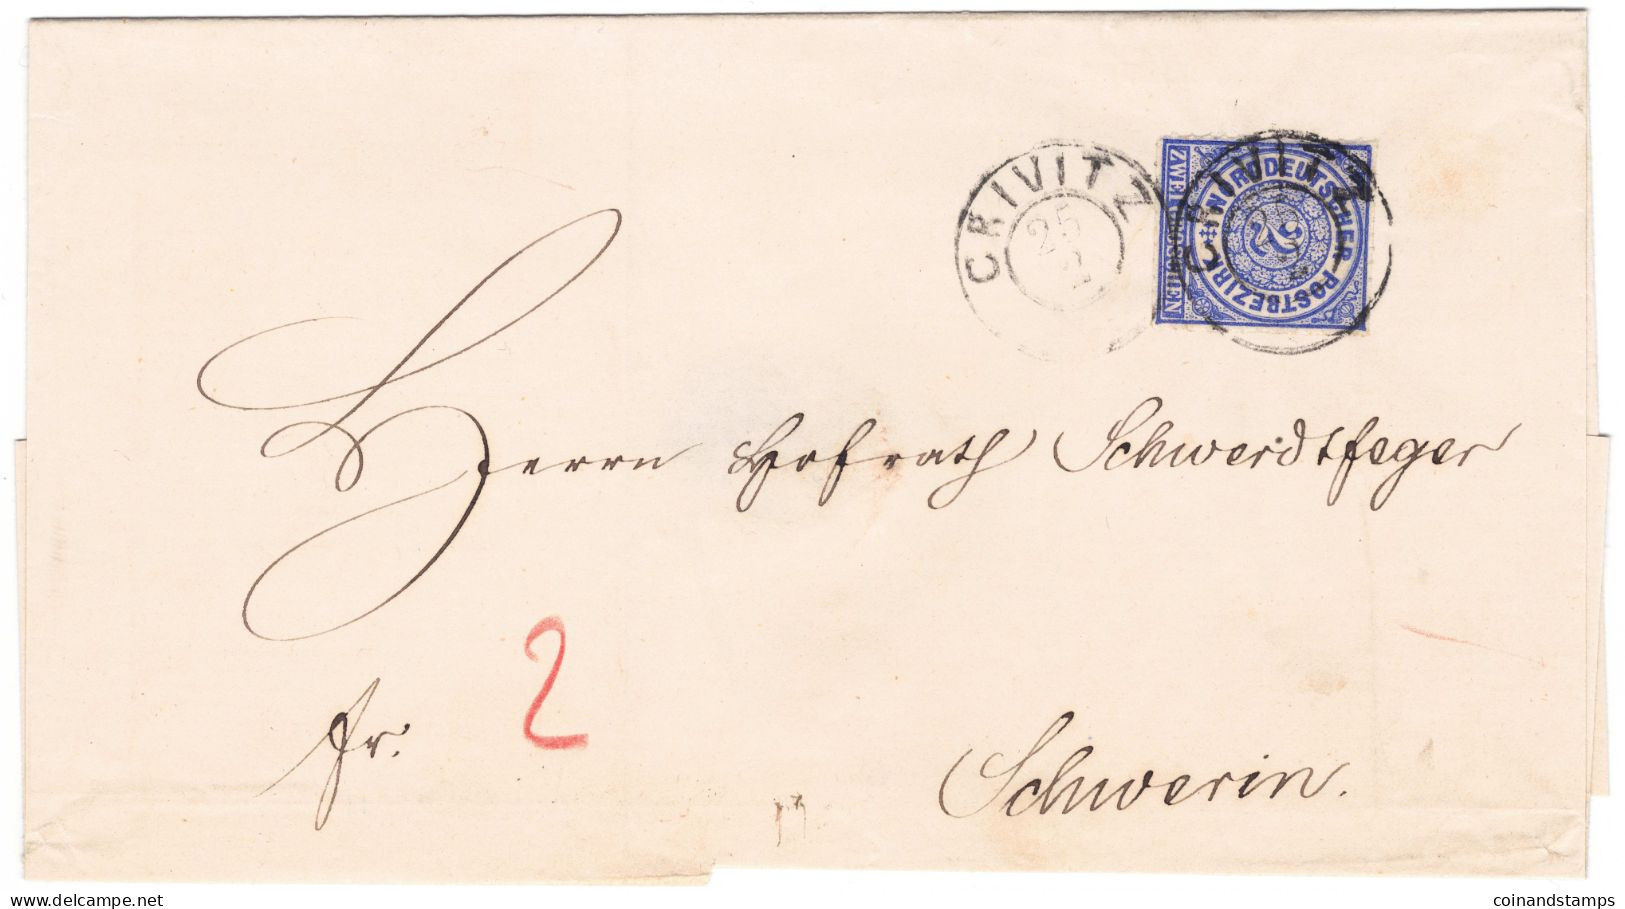 NDP Brief Mit Mi.-Nr.5 Als EF. Crivitz 25.2.1868 An Herrn Schwedtfeger Nach Schwerin, Feinst - Briefe U. Dokumente